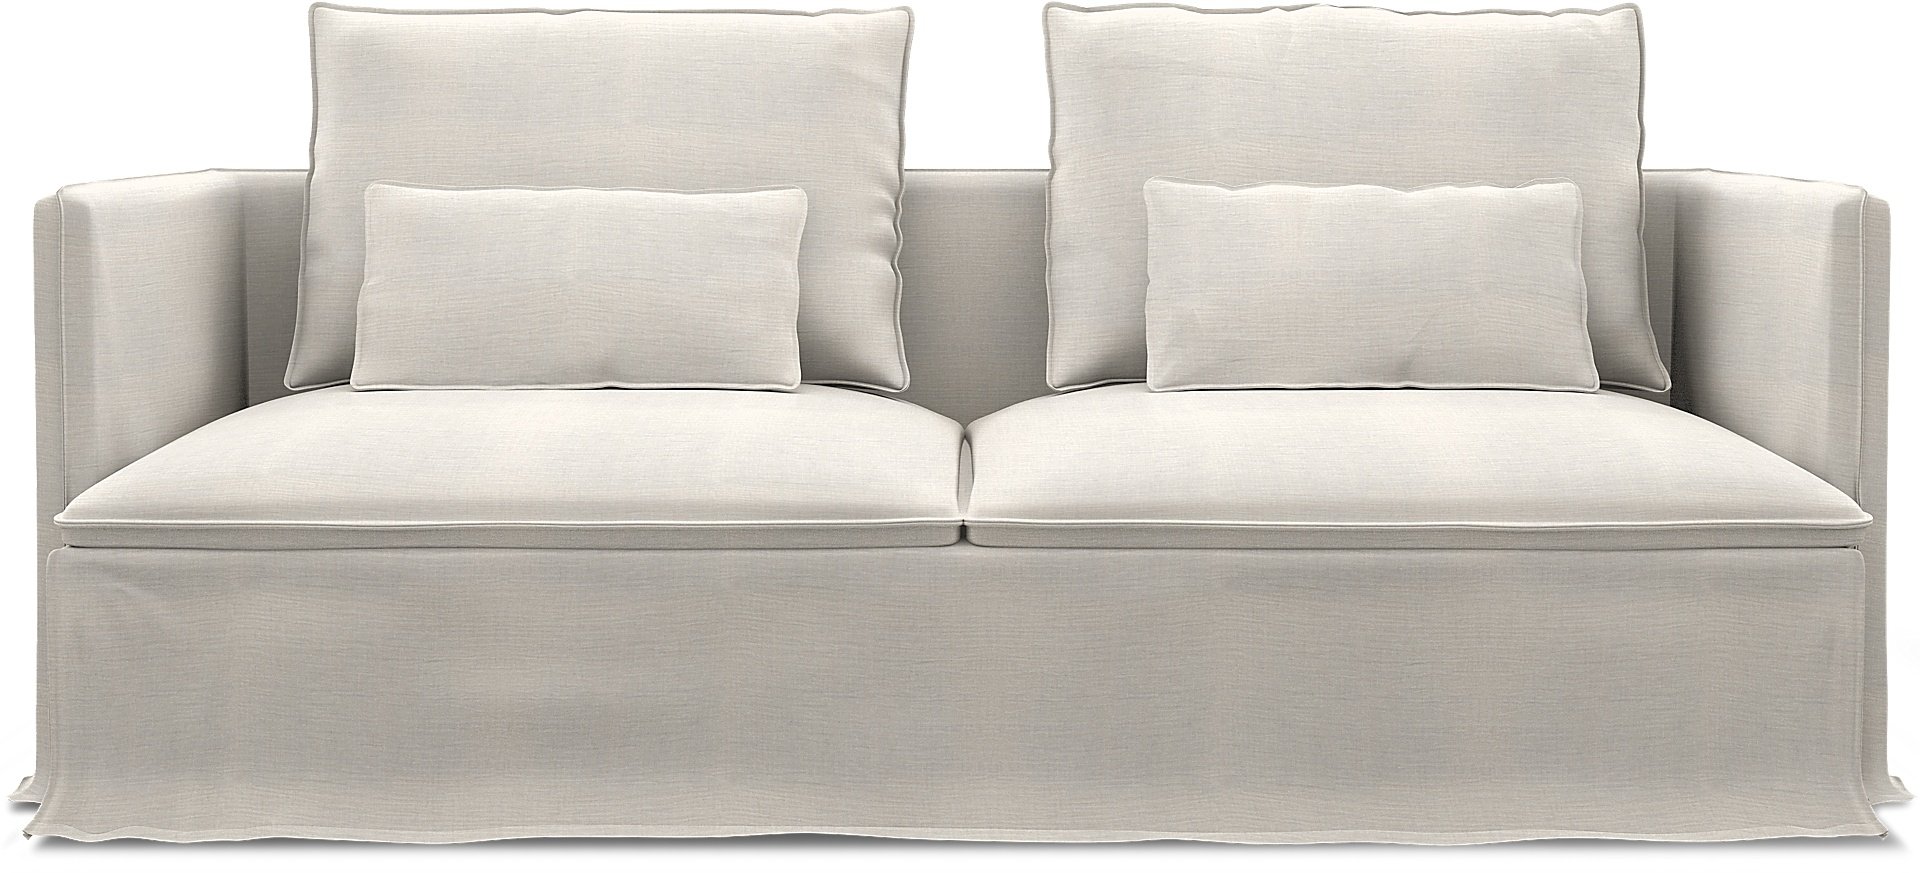 IKEA - Soderhamn 3 Seater Sofa Cover, Soft White, Linen - Bemz